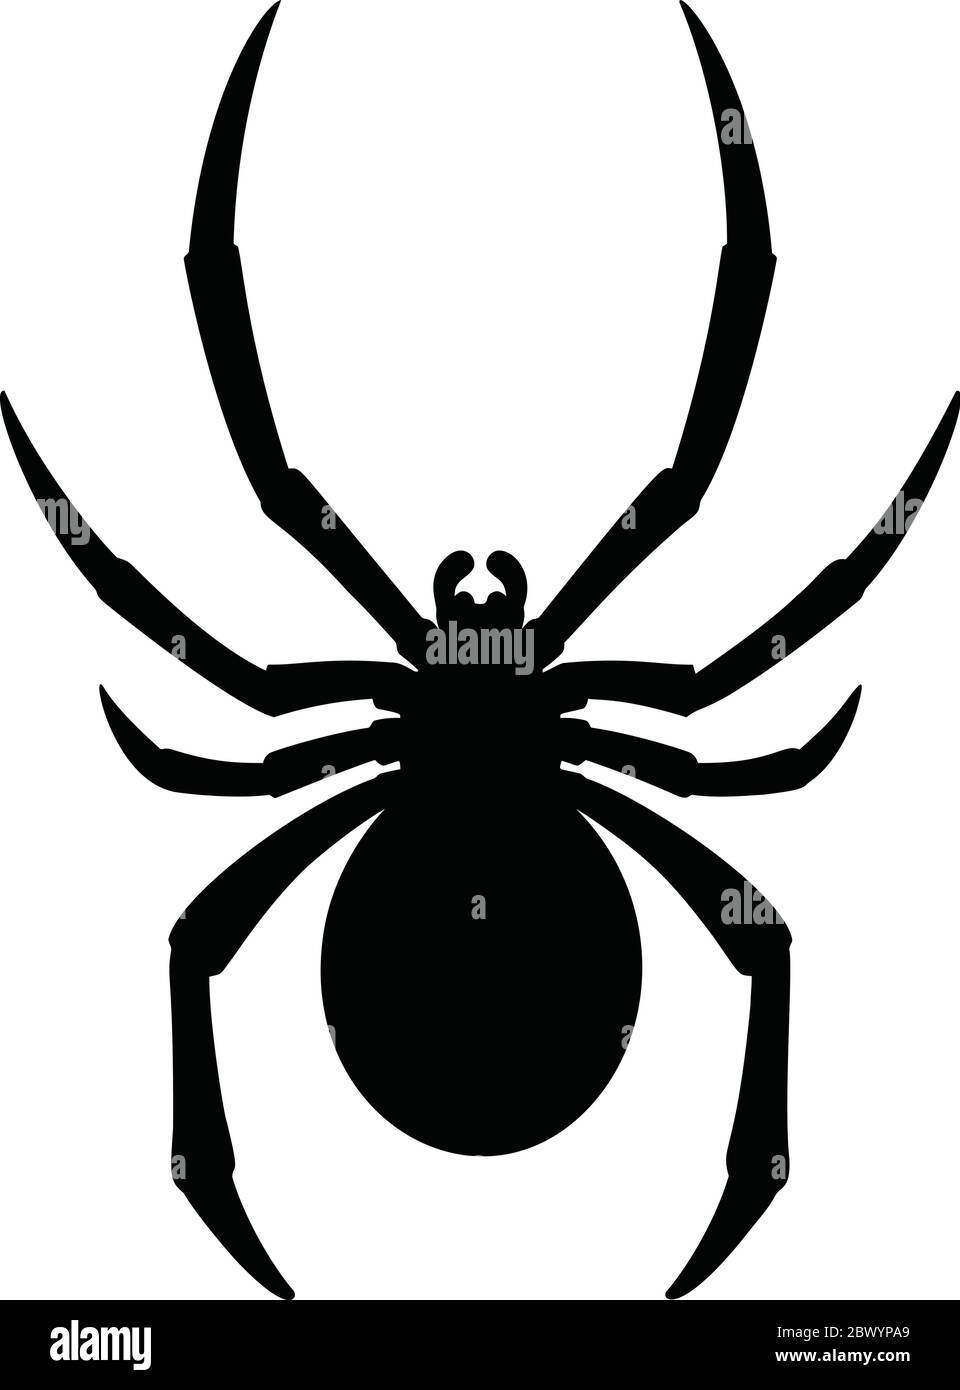 Black Widow Silhouette - eine Illustration einer Black Widow Spider Silhouette. Stock Vektor